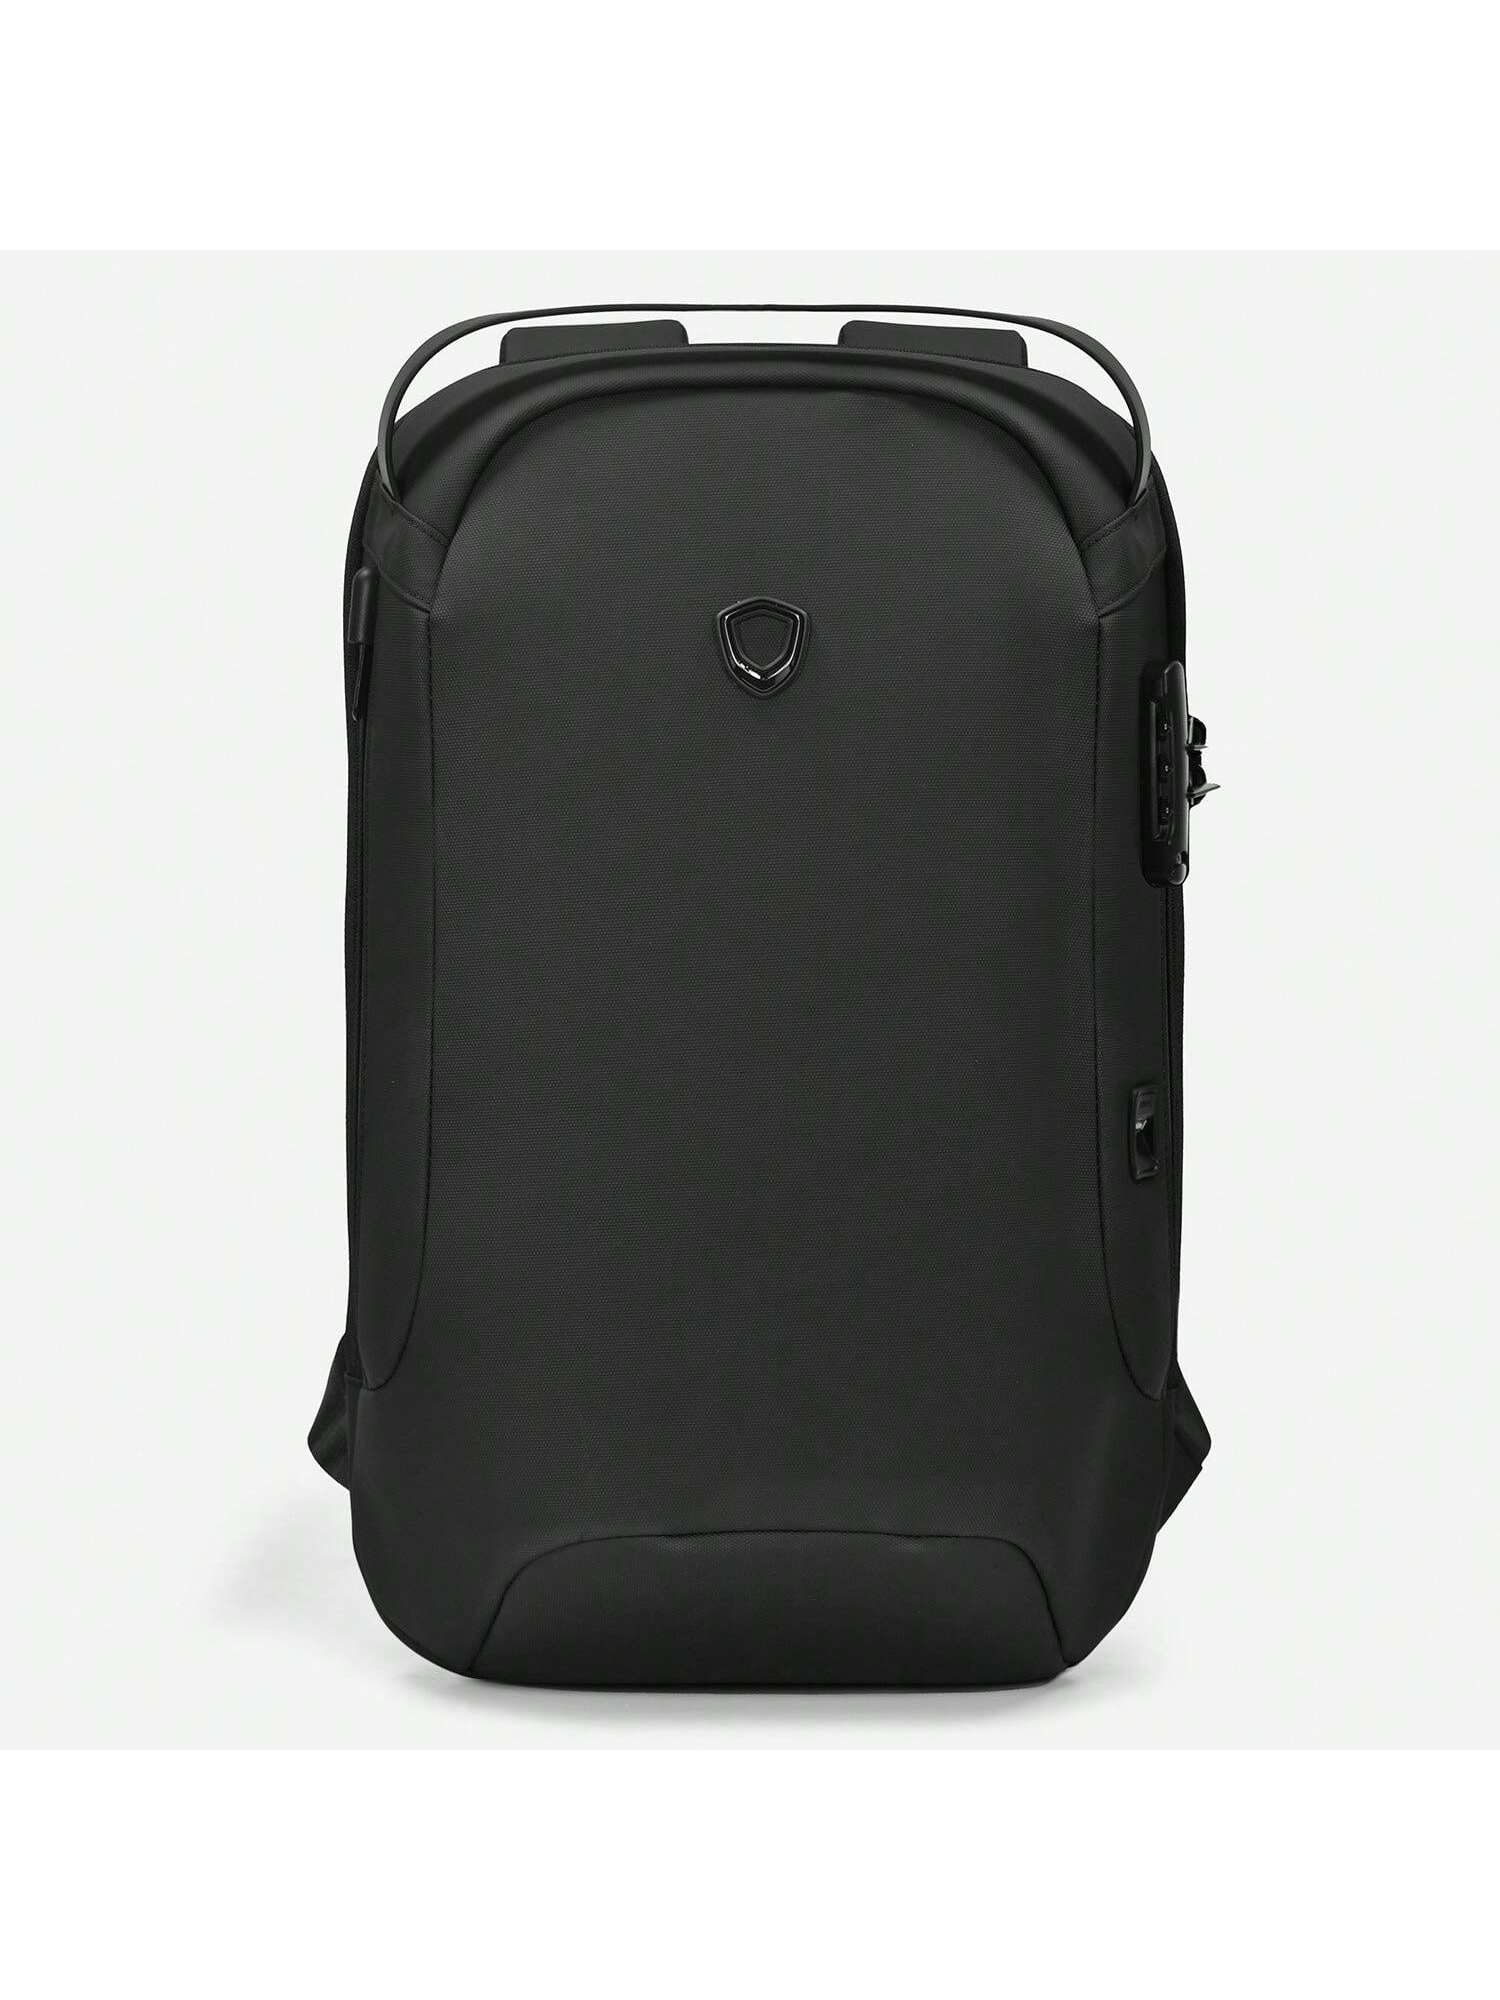 Матовый водостойкий рюкзак Frailey с USB-портом и кодовым замком, черный рюкзак каркасный 39 х 28 х 15 см с кодовым замком seventeen кот с планетой